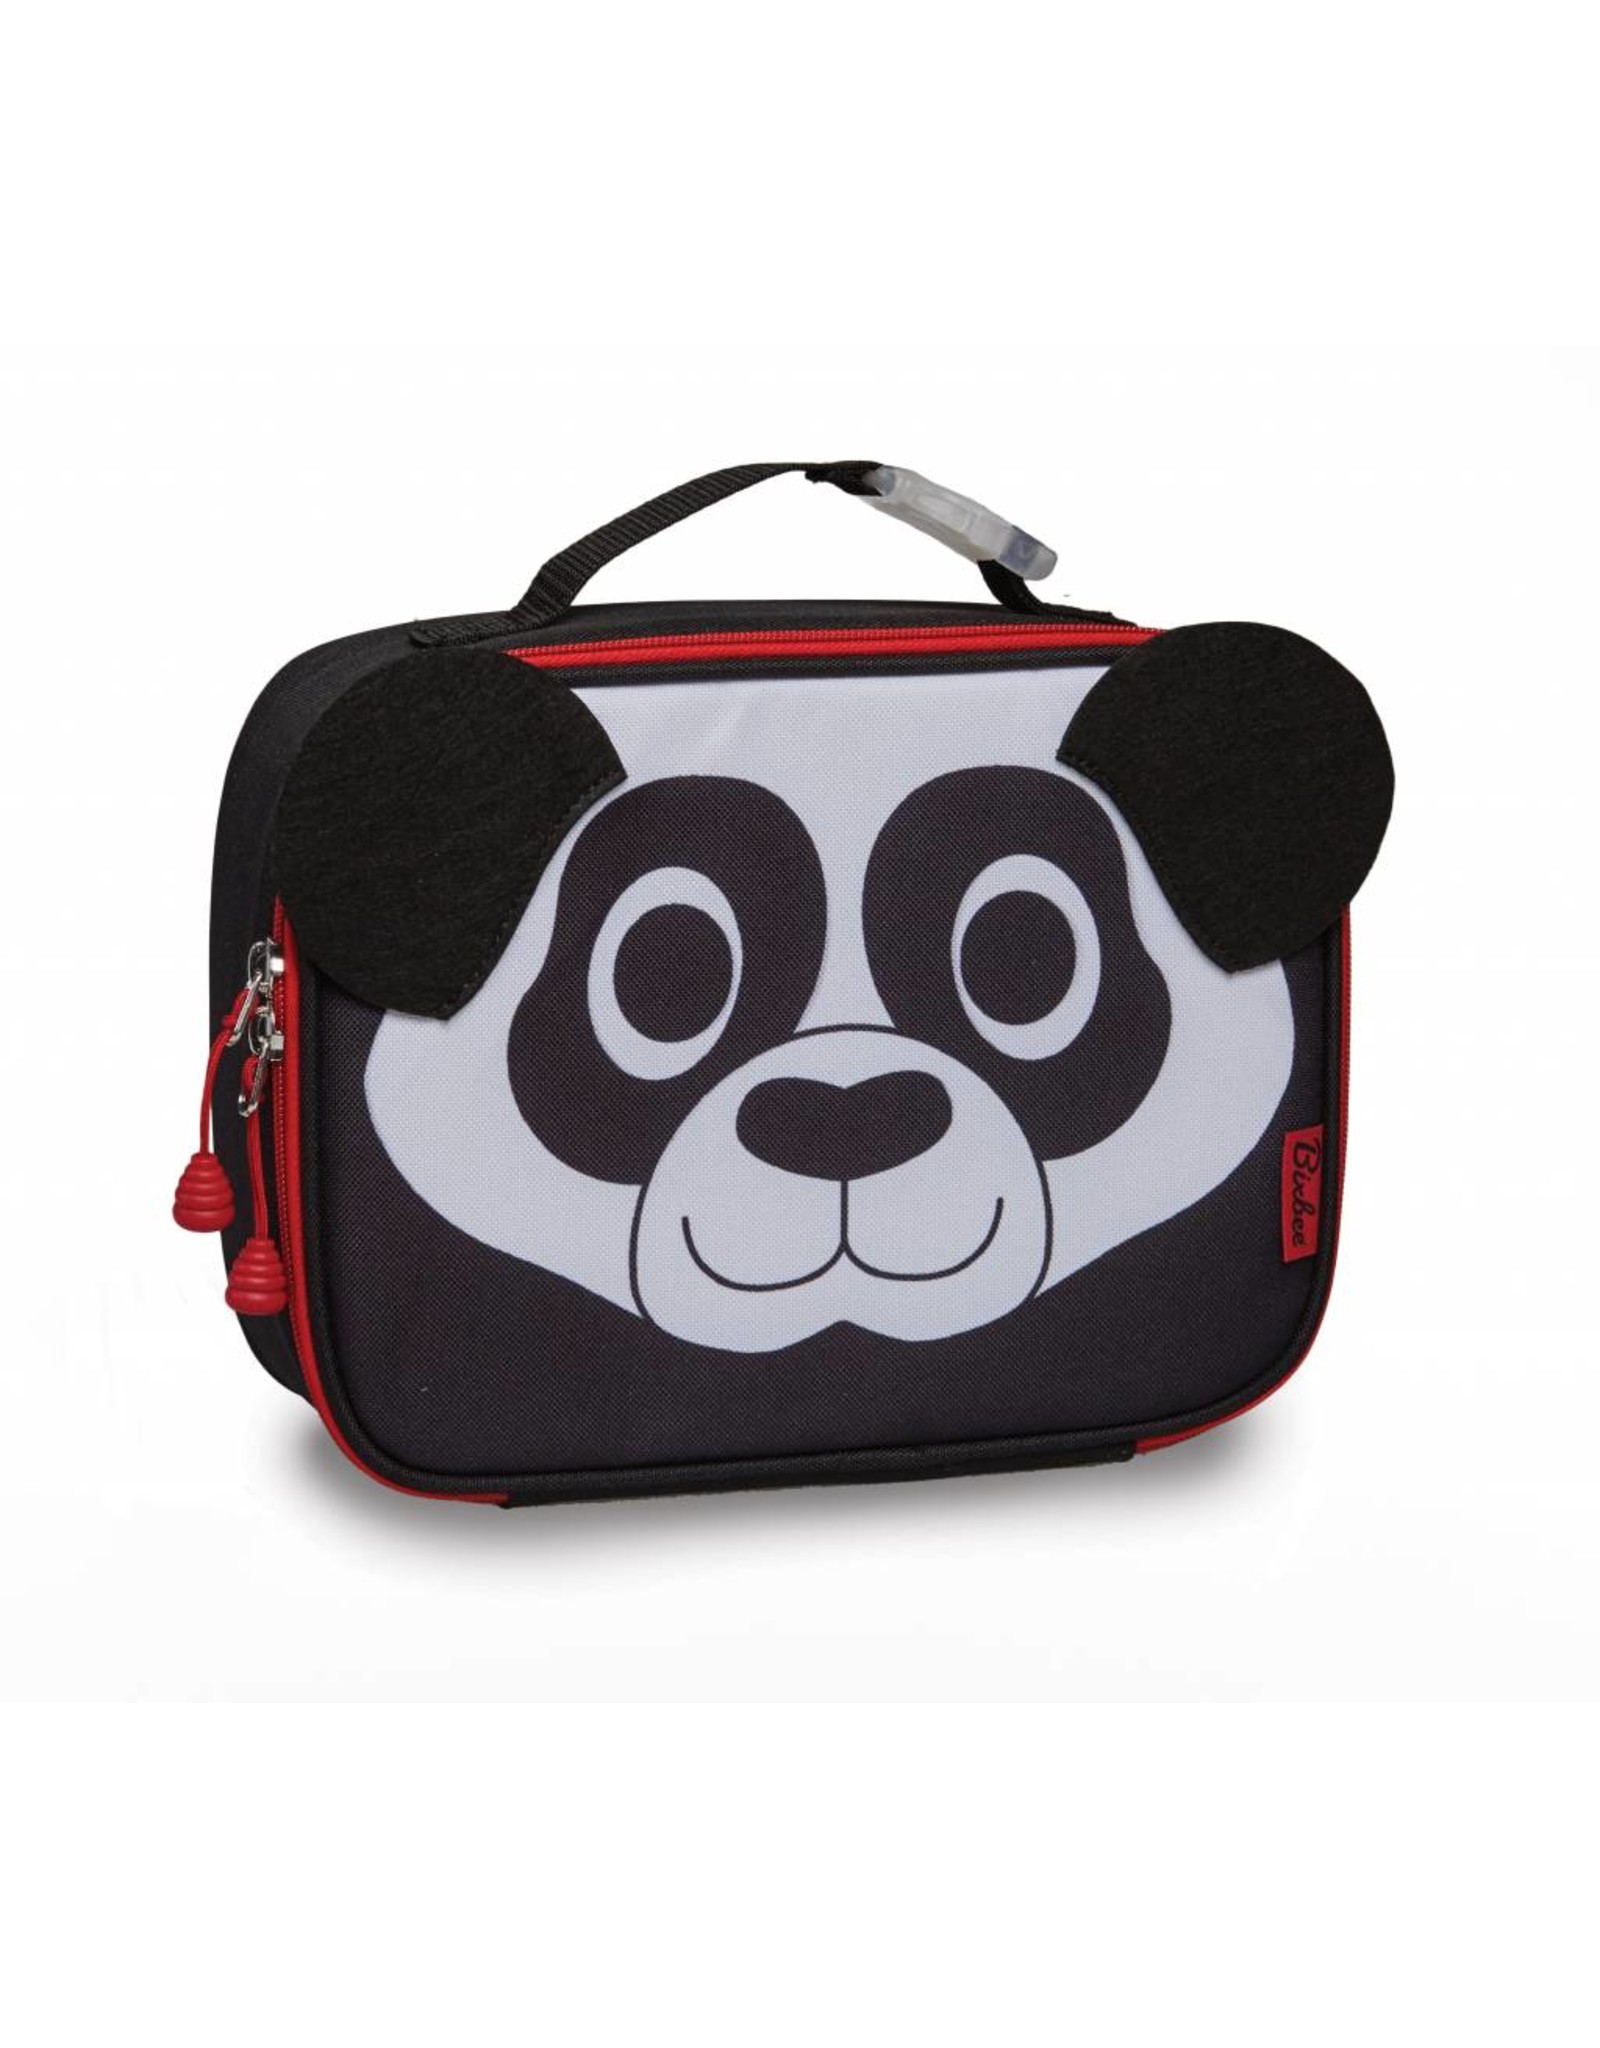 Lunchbox Panda | KinderRugzak.eu - kinderrugzak.eu